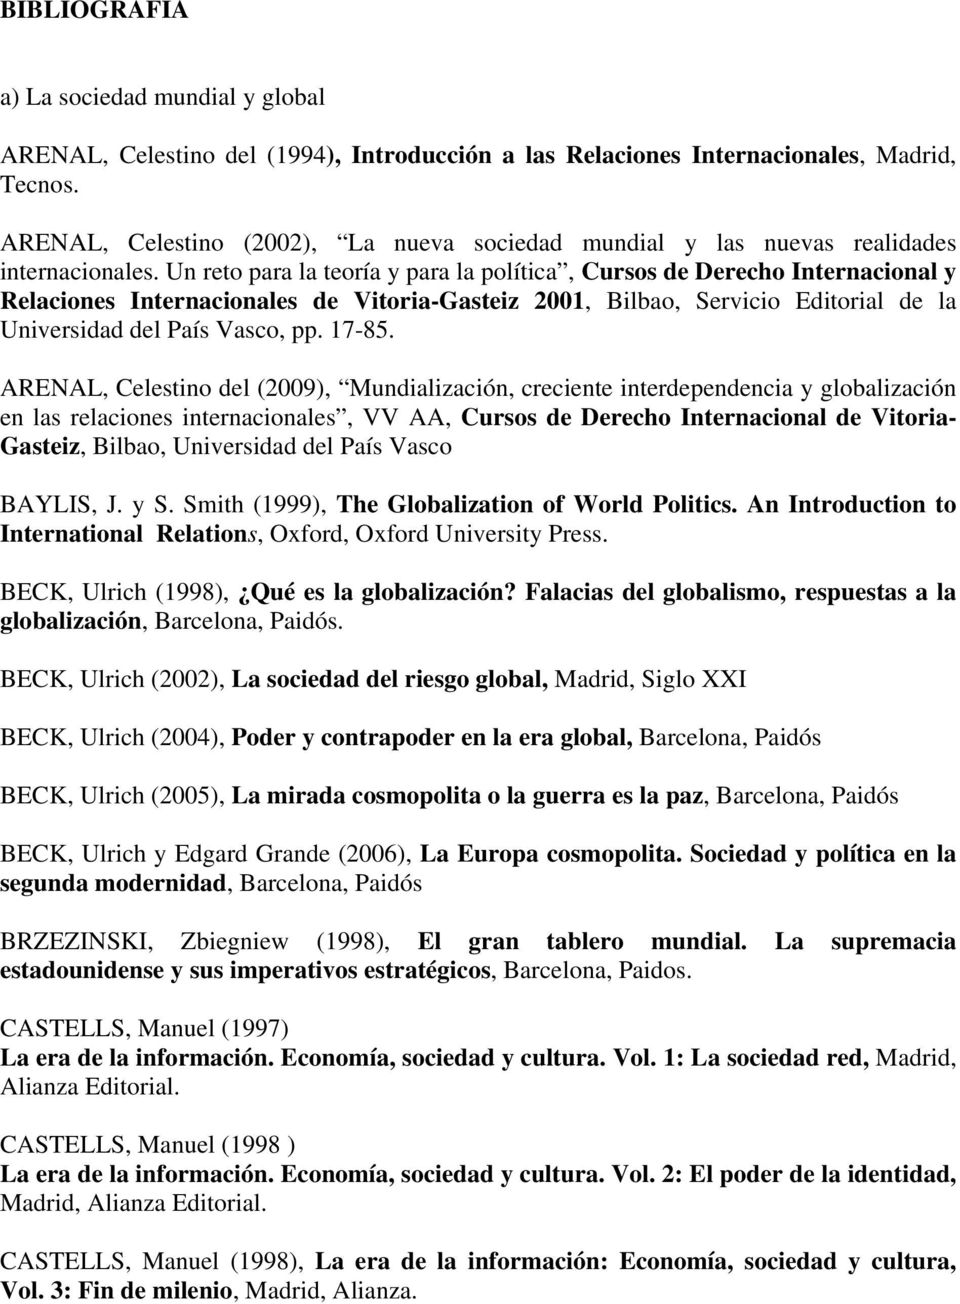 Un reto para la teoría y para la política, Cursos de Derecho Internacional y Relaciones Internacionales de Vitoria-Gasteiz 2001, Bilbao, Servicio Editorial de la Universidad del País Vasco, pp. 17-85.